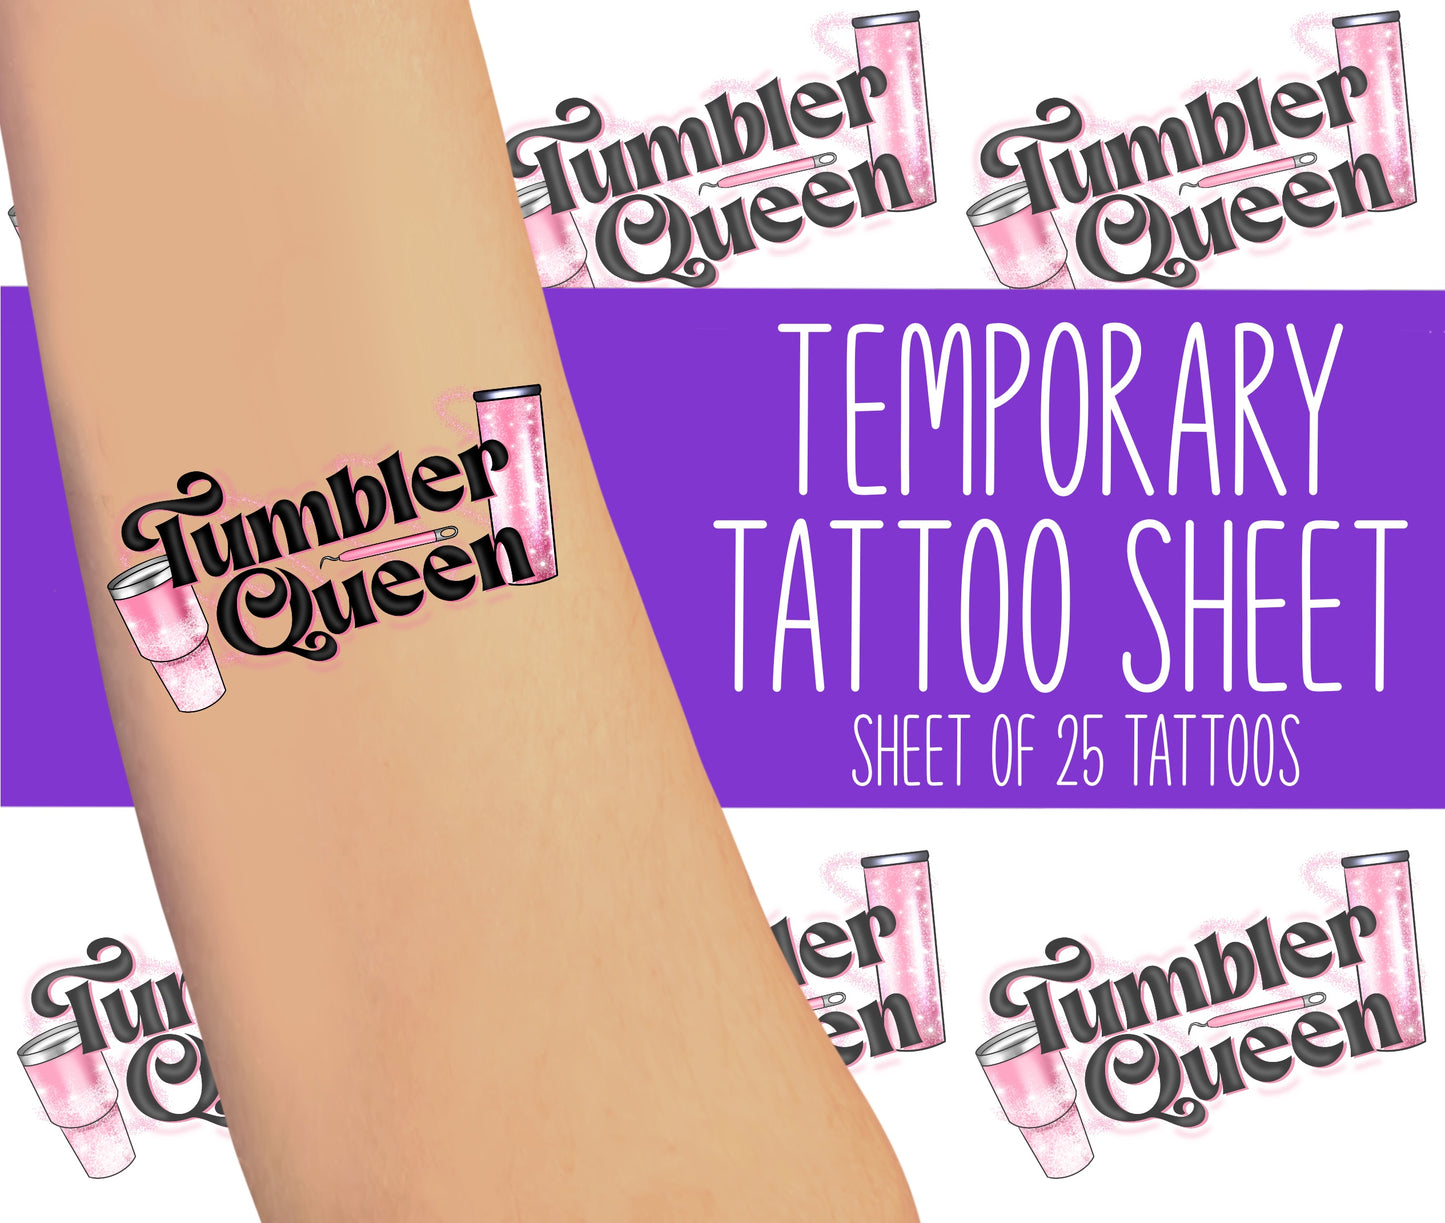 Pink Tumbler Queen Tattoo Sheet